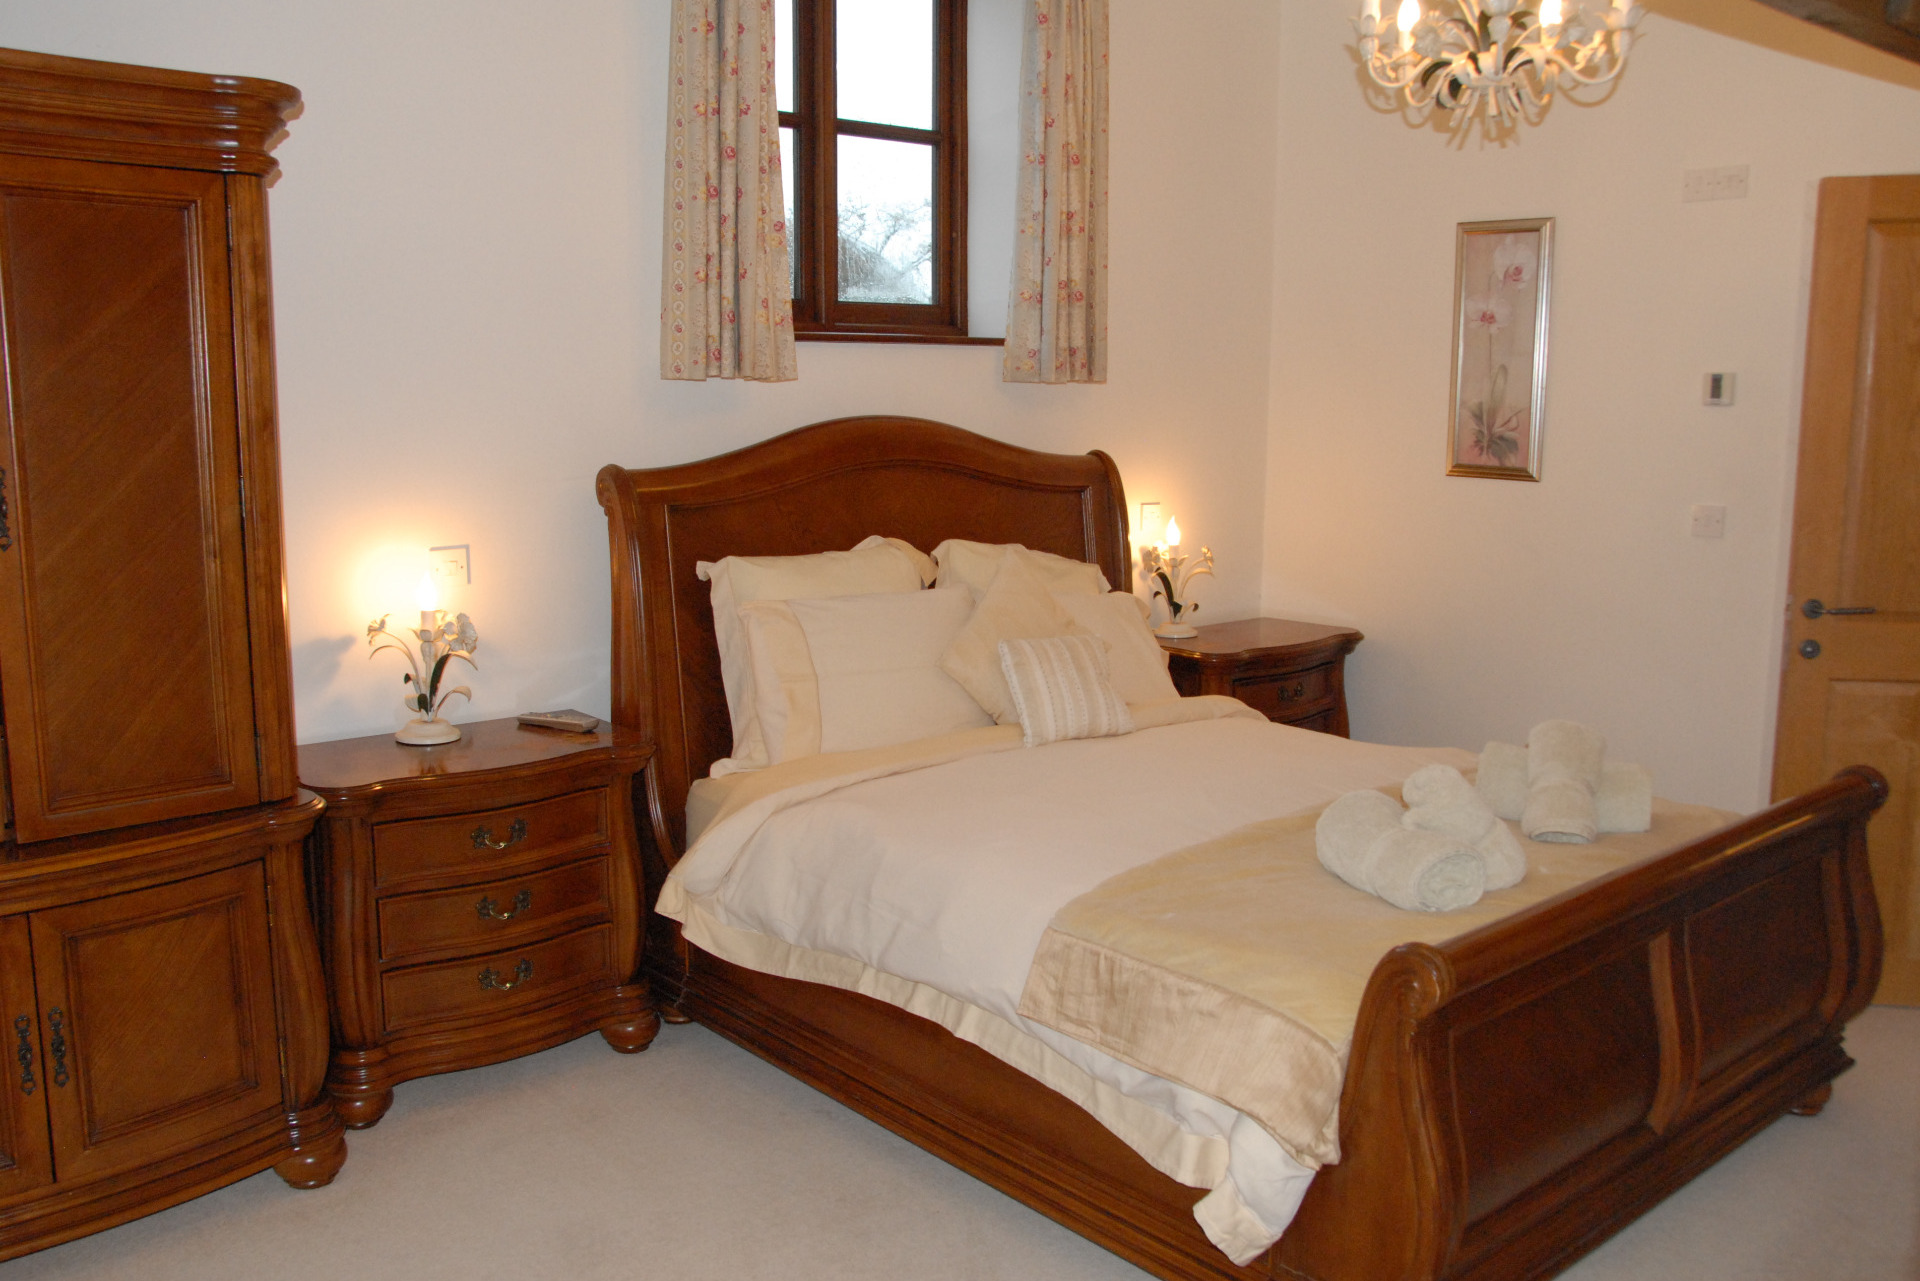 Holiday cottages North Devon Luxury bed